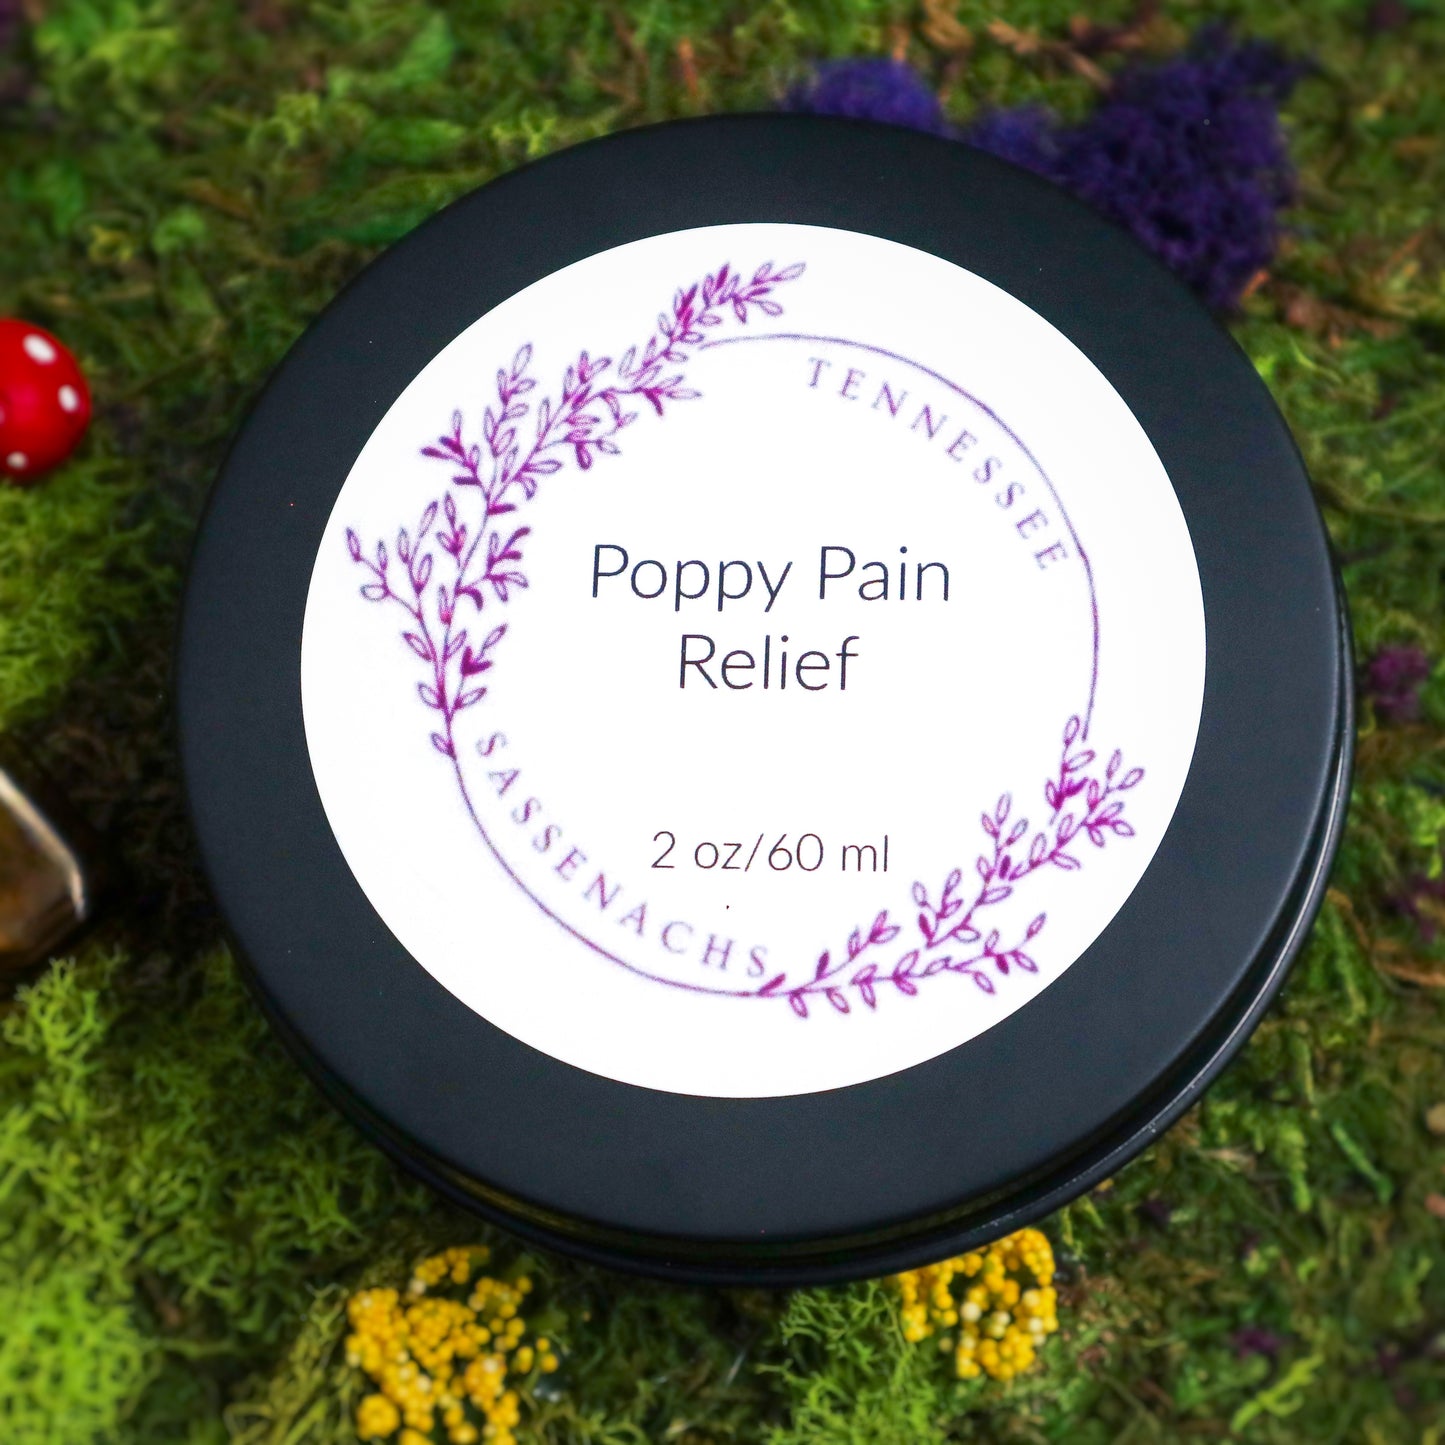 Poppy Pain Relief